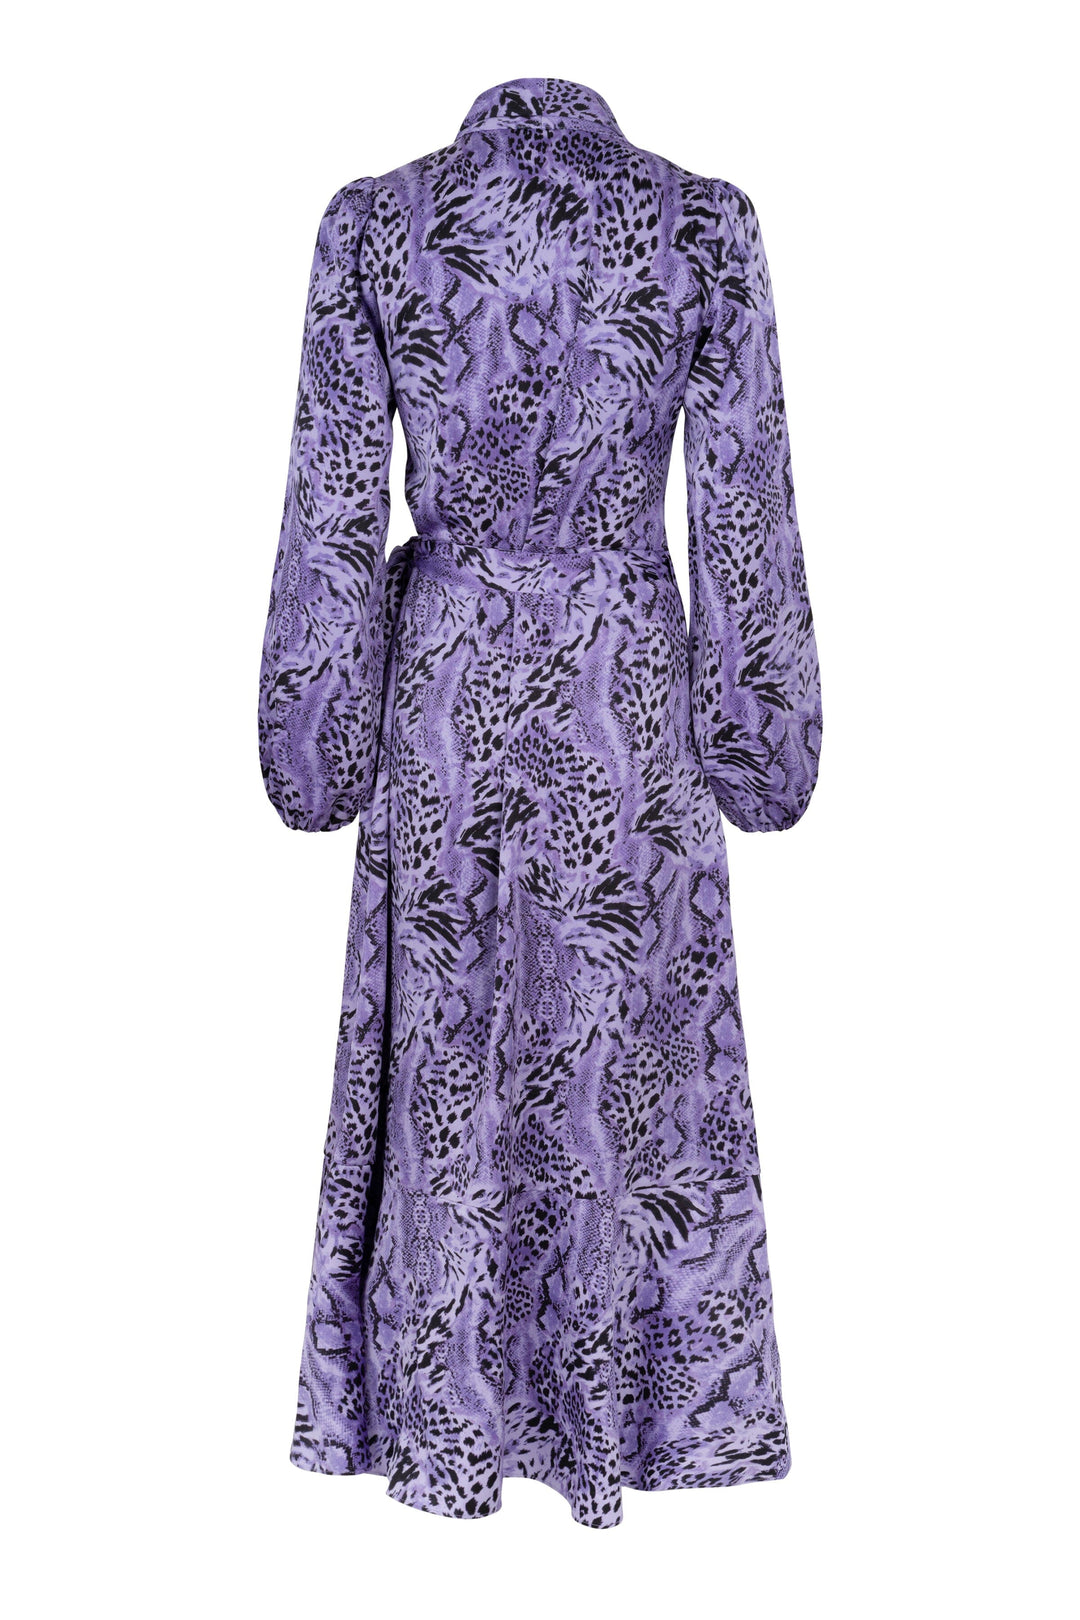 Cras - Laracras Dress - 8005 Wild Lavender Kjoler 